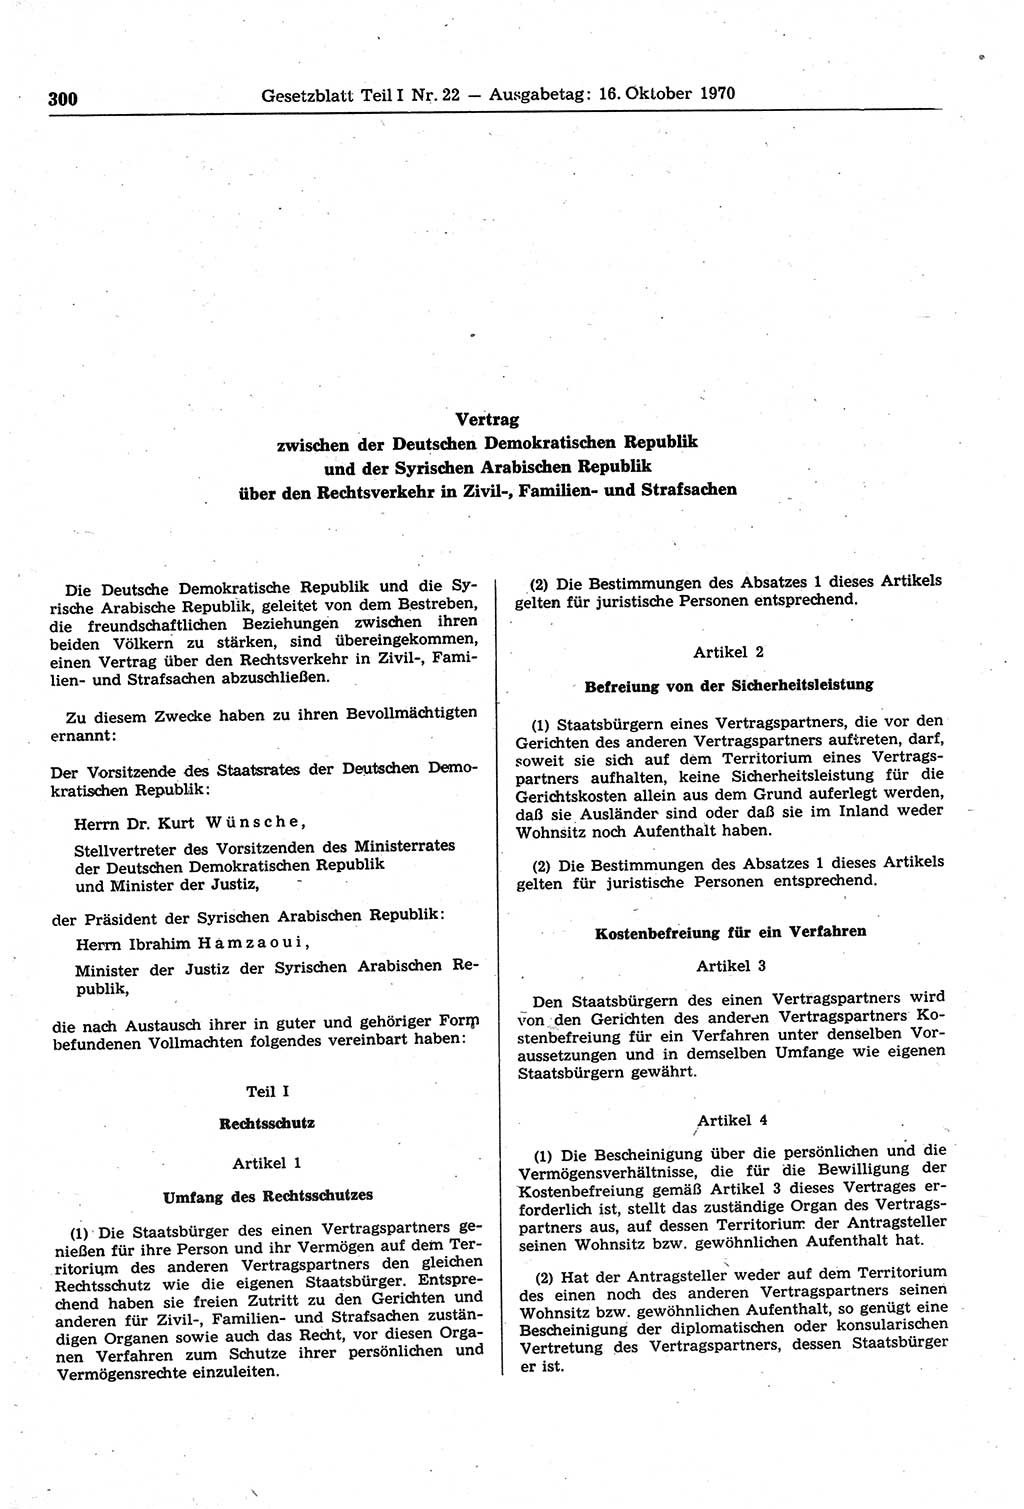 Gesetzblatt (GBl.) der Deutschen Demokratischen Republik (DDR) Teil Ⅰ 1970, Seite 300 (GBl. DDR Ⅰ 1970, S. 300)